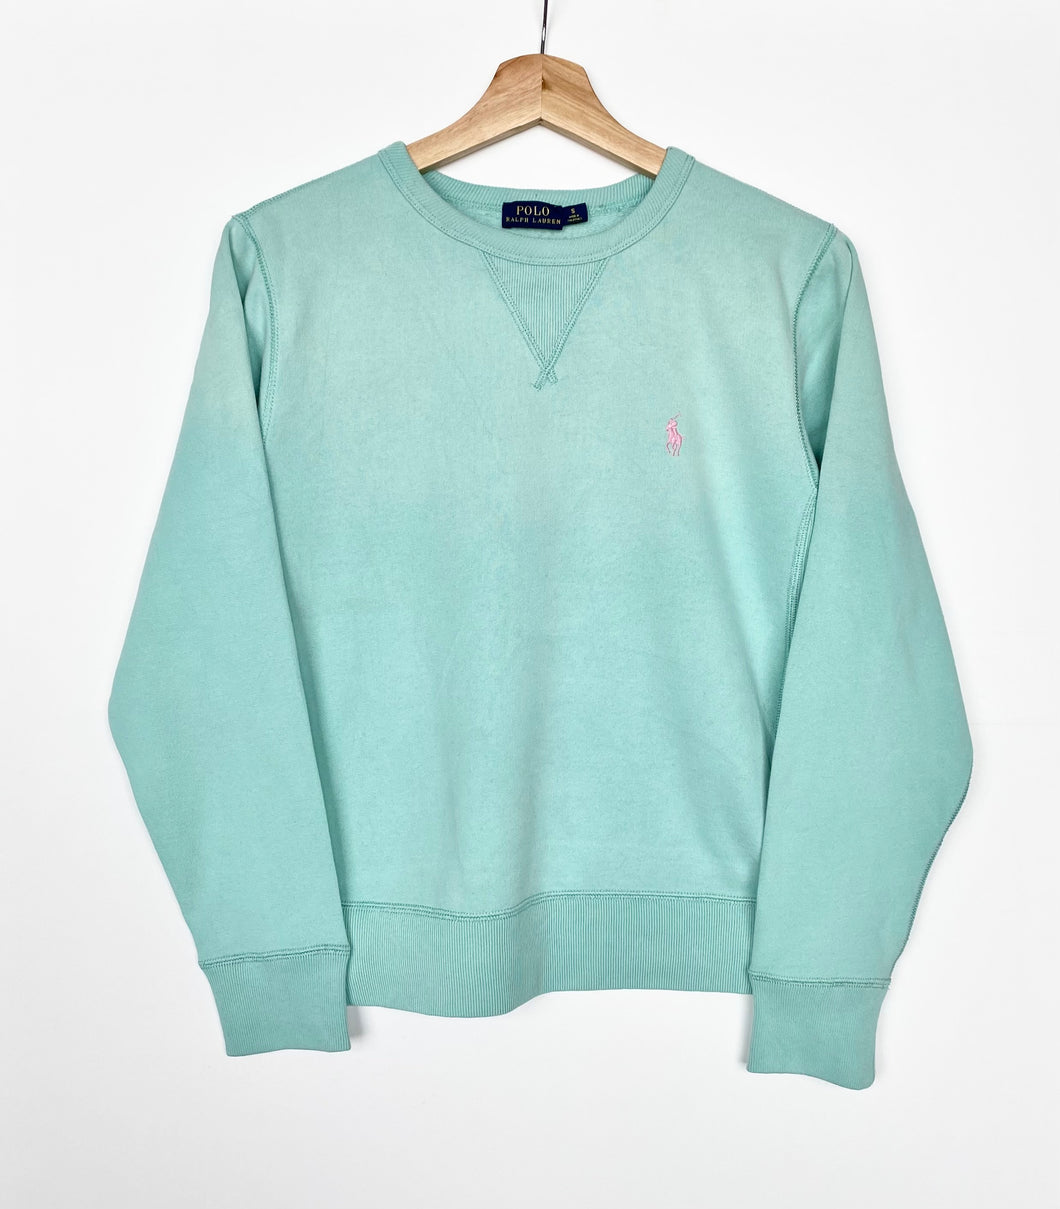 Ralph Lauren sweatshirt (S)